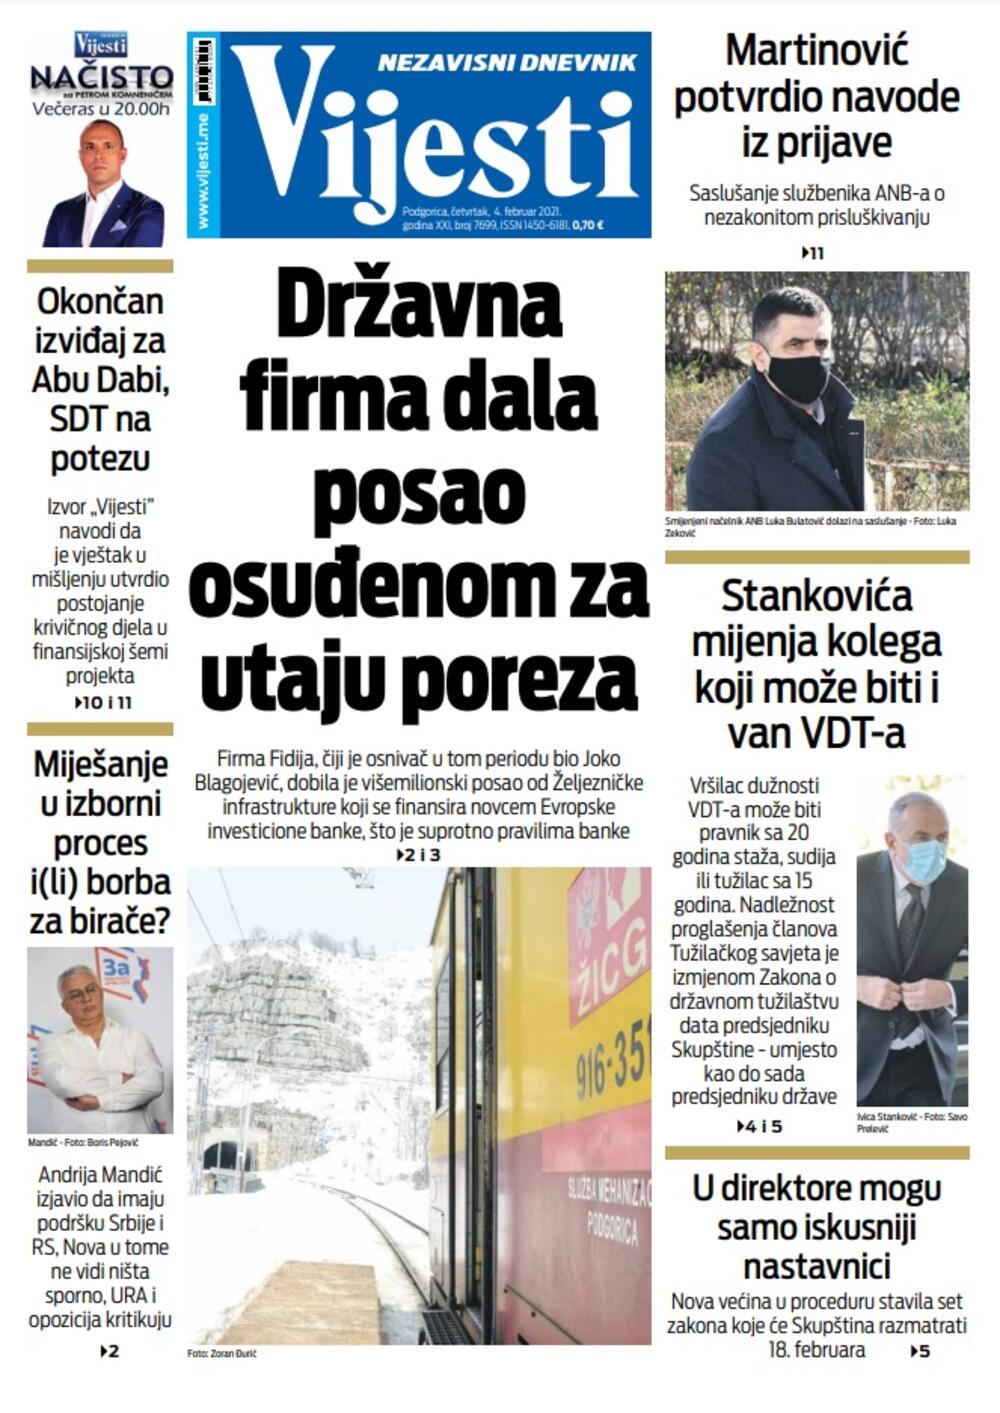 Naslovna strana "Vijesti" za četvrtak 4. februar 2021. godine., Foto: Vijesti